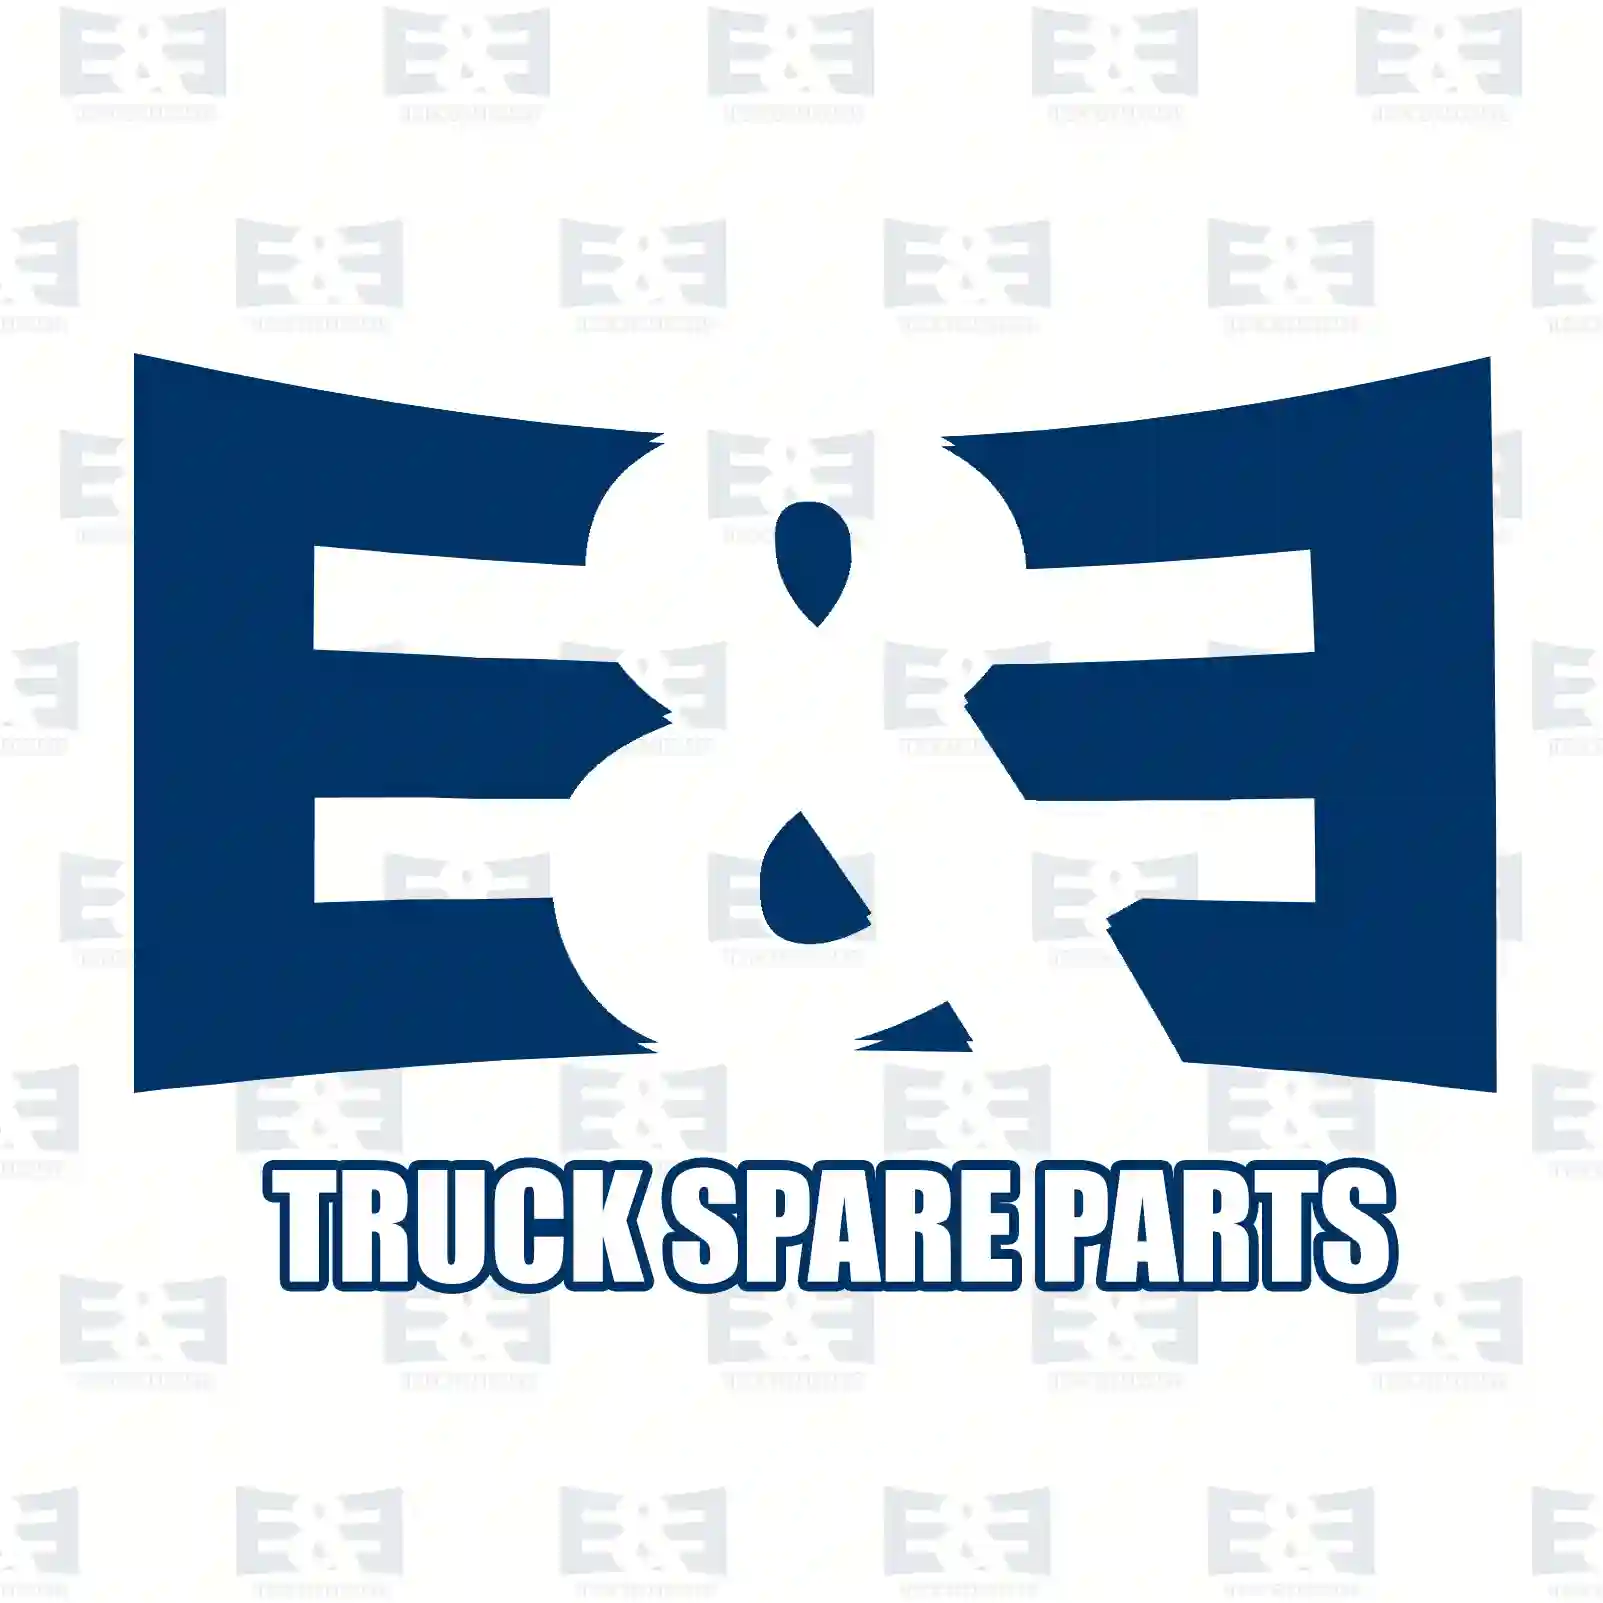 Wear indicator, 2E2296576, 81508226011, 81508226016, ||  2E2296576 E&E Truck Spare Parts | Truck Spare Parts, Auotomotive Spare Parts Wear indicator, 2E2296576, 81508226011, 81508226016, ||  2E2296576 E&E Truck Spare Parts | Truck Spare Parts, Auotomotive Spare Parts